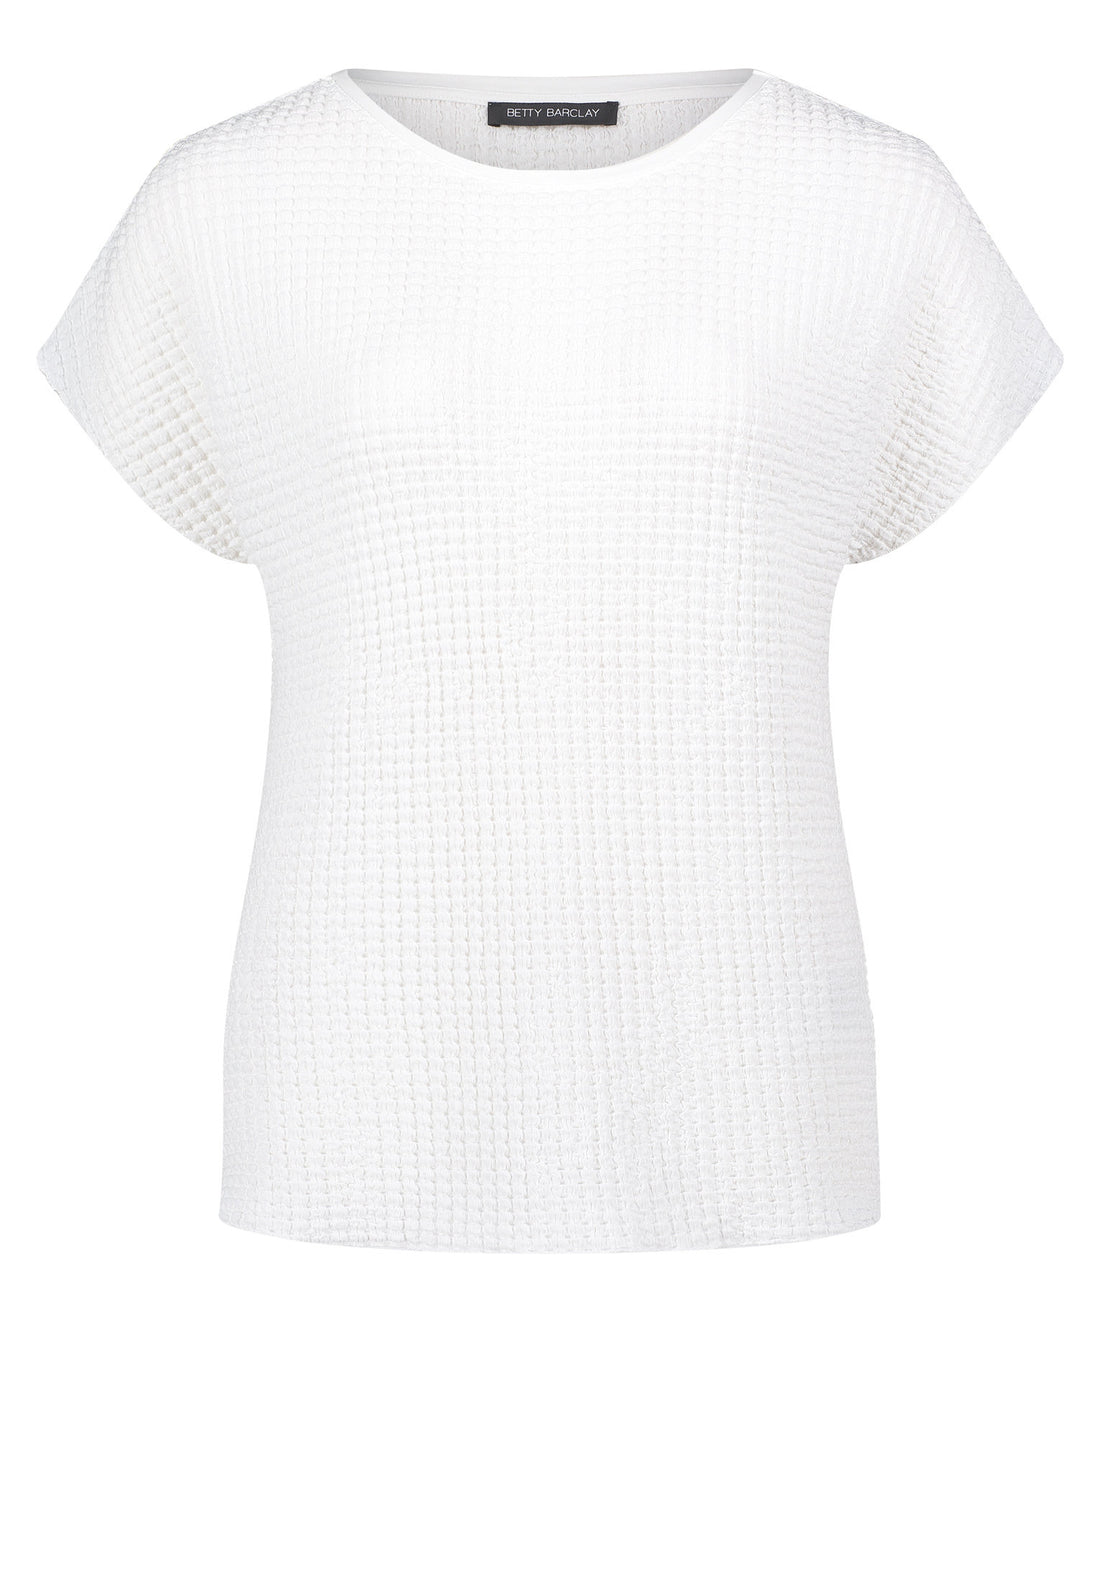 Short Sleeve Textured T-Shirt_2068-2559_1014_01